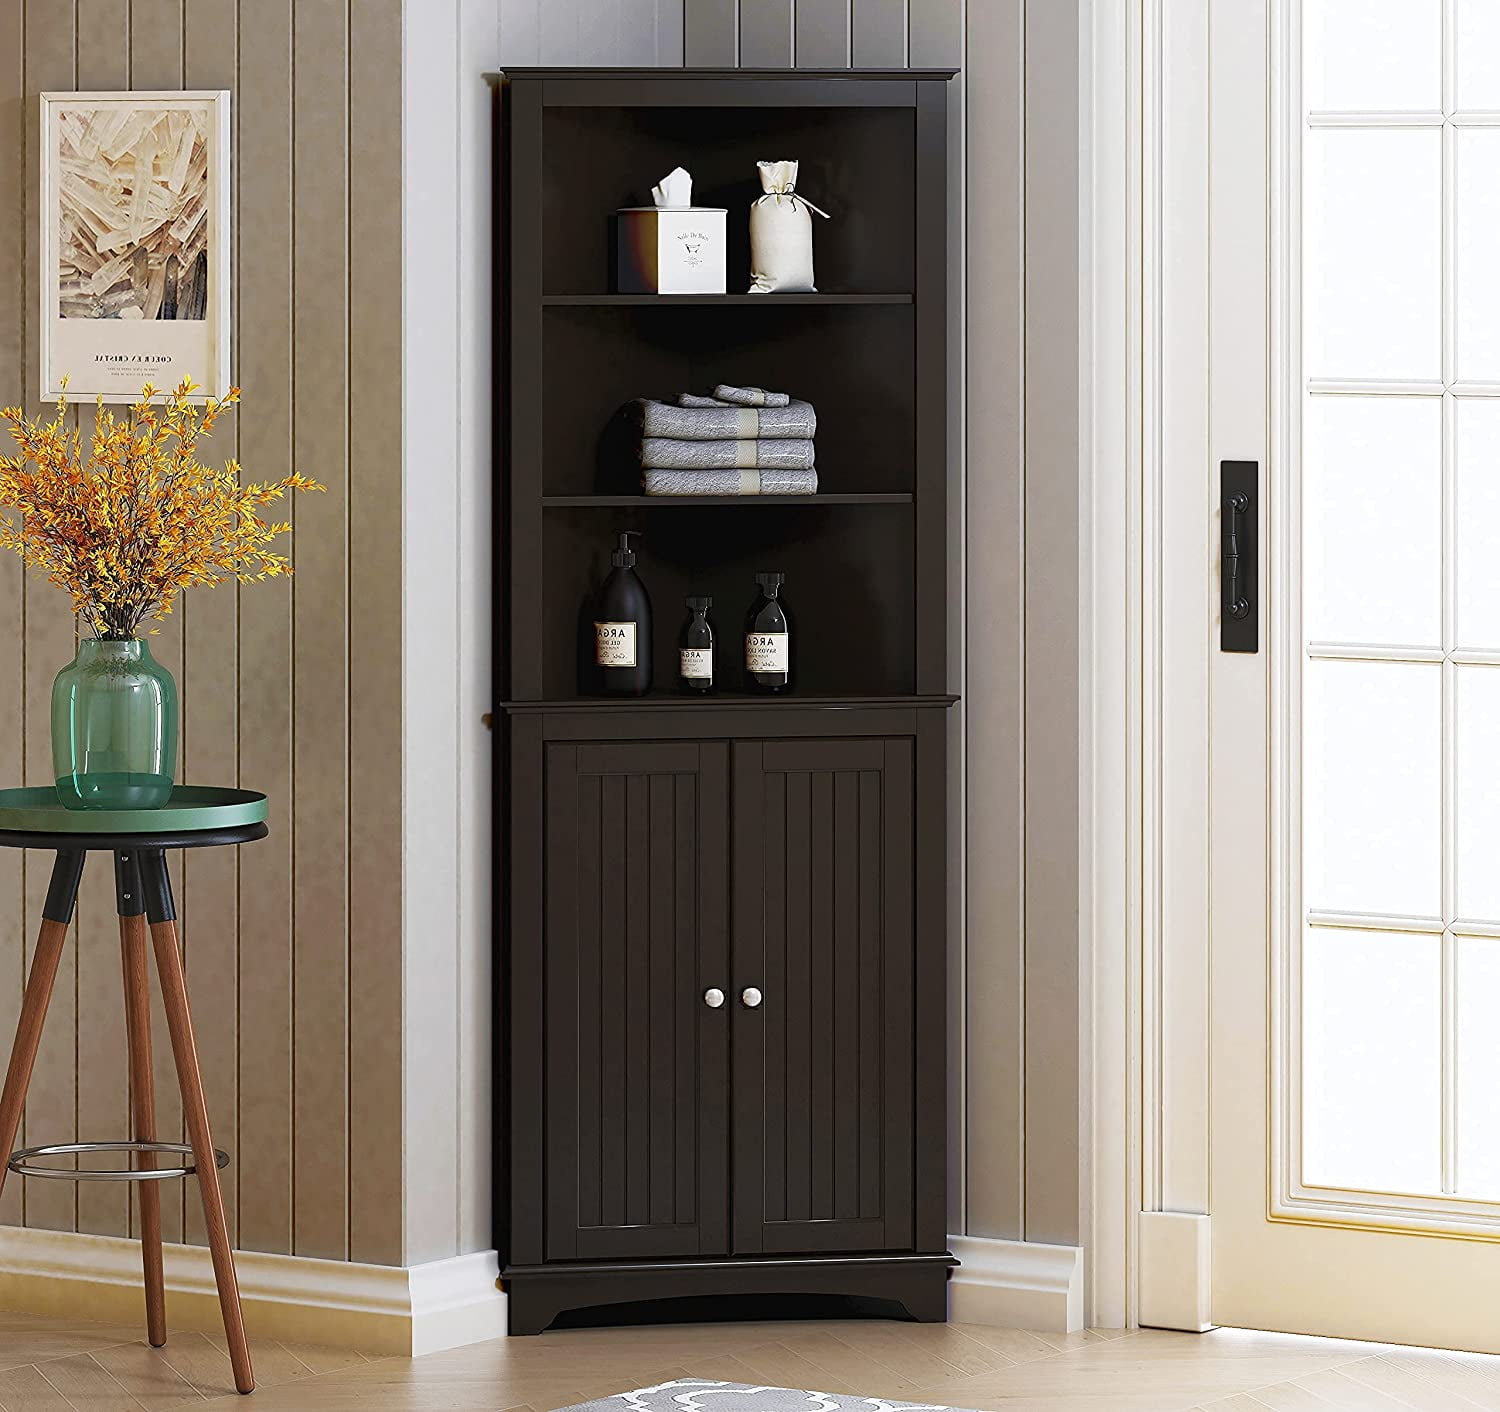 Floor Storage Cabinet Country Kitchen Adjustable Shelves Double Doors Cupboard 